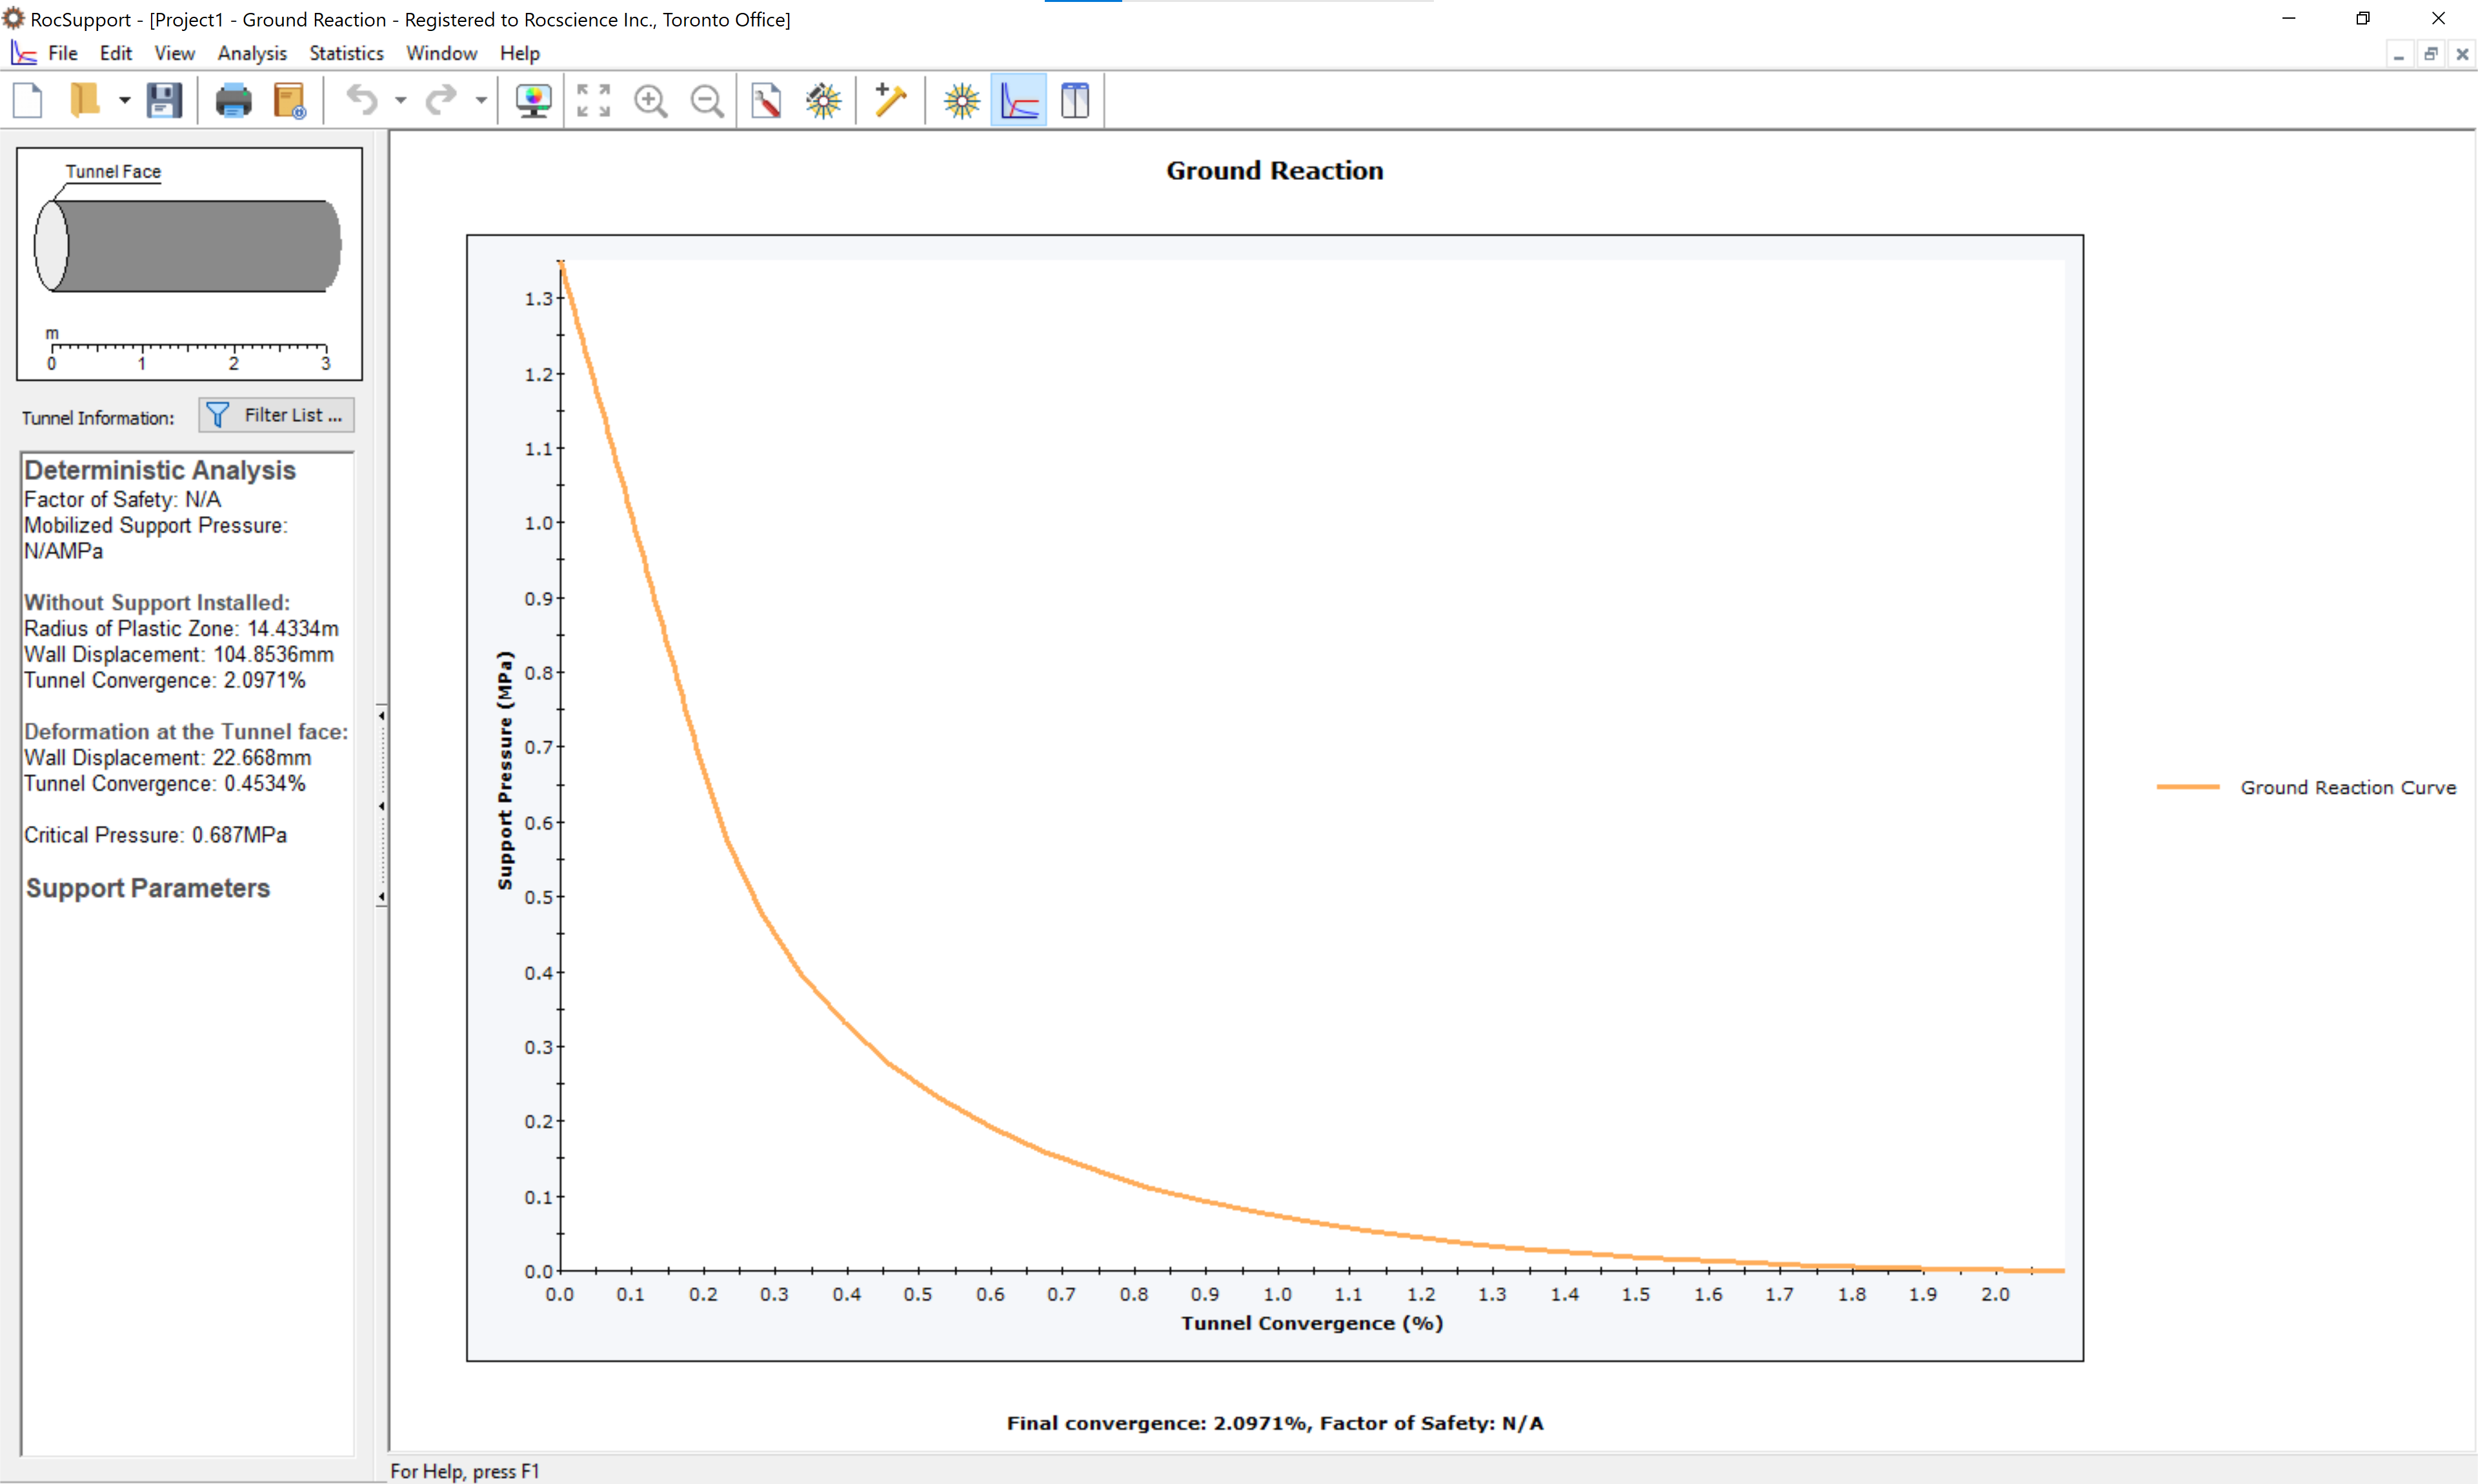 Ground reaction curve view (default)